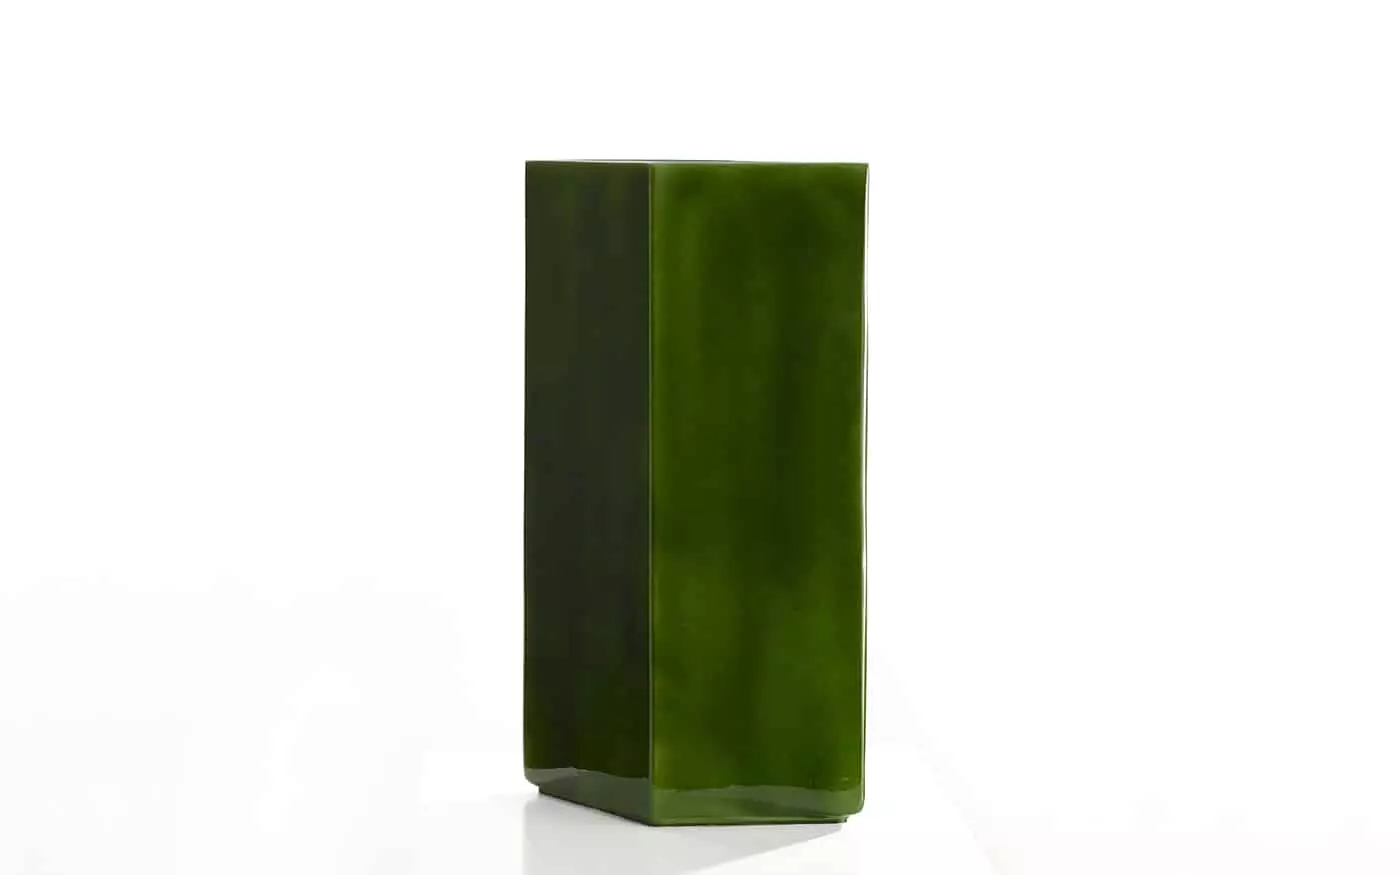 Vase Losange 84 green - Ronan and Erwan Bouroullec - Losange.